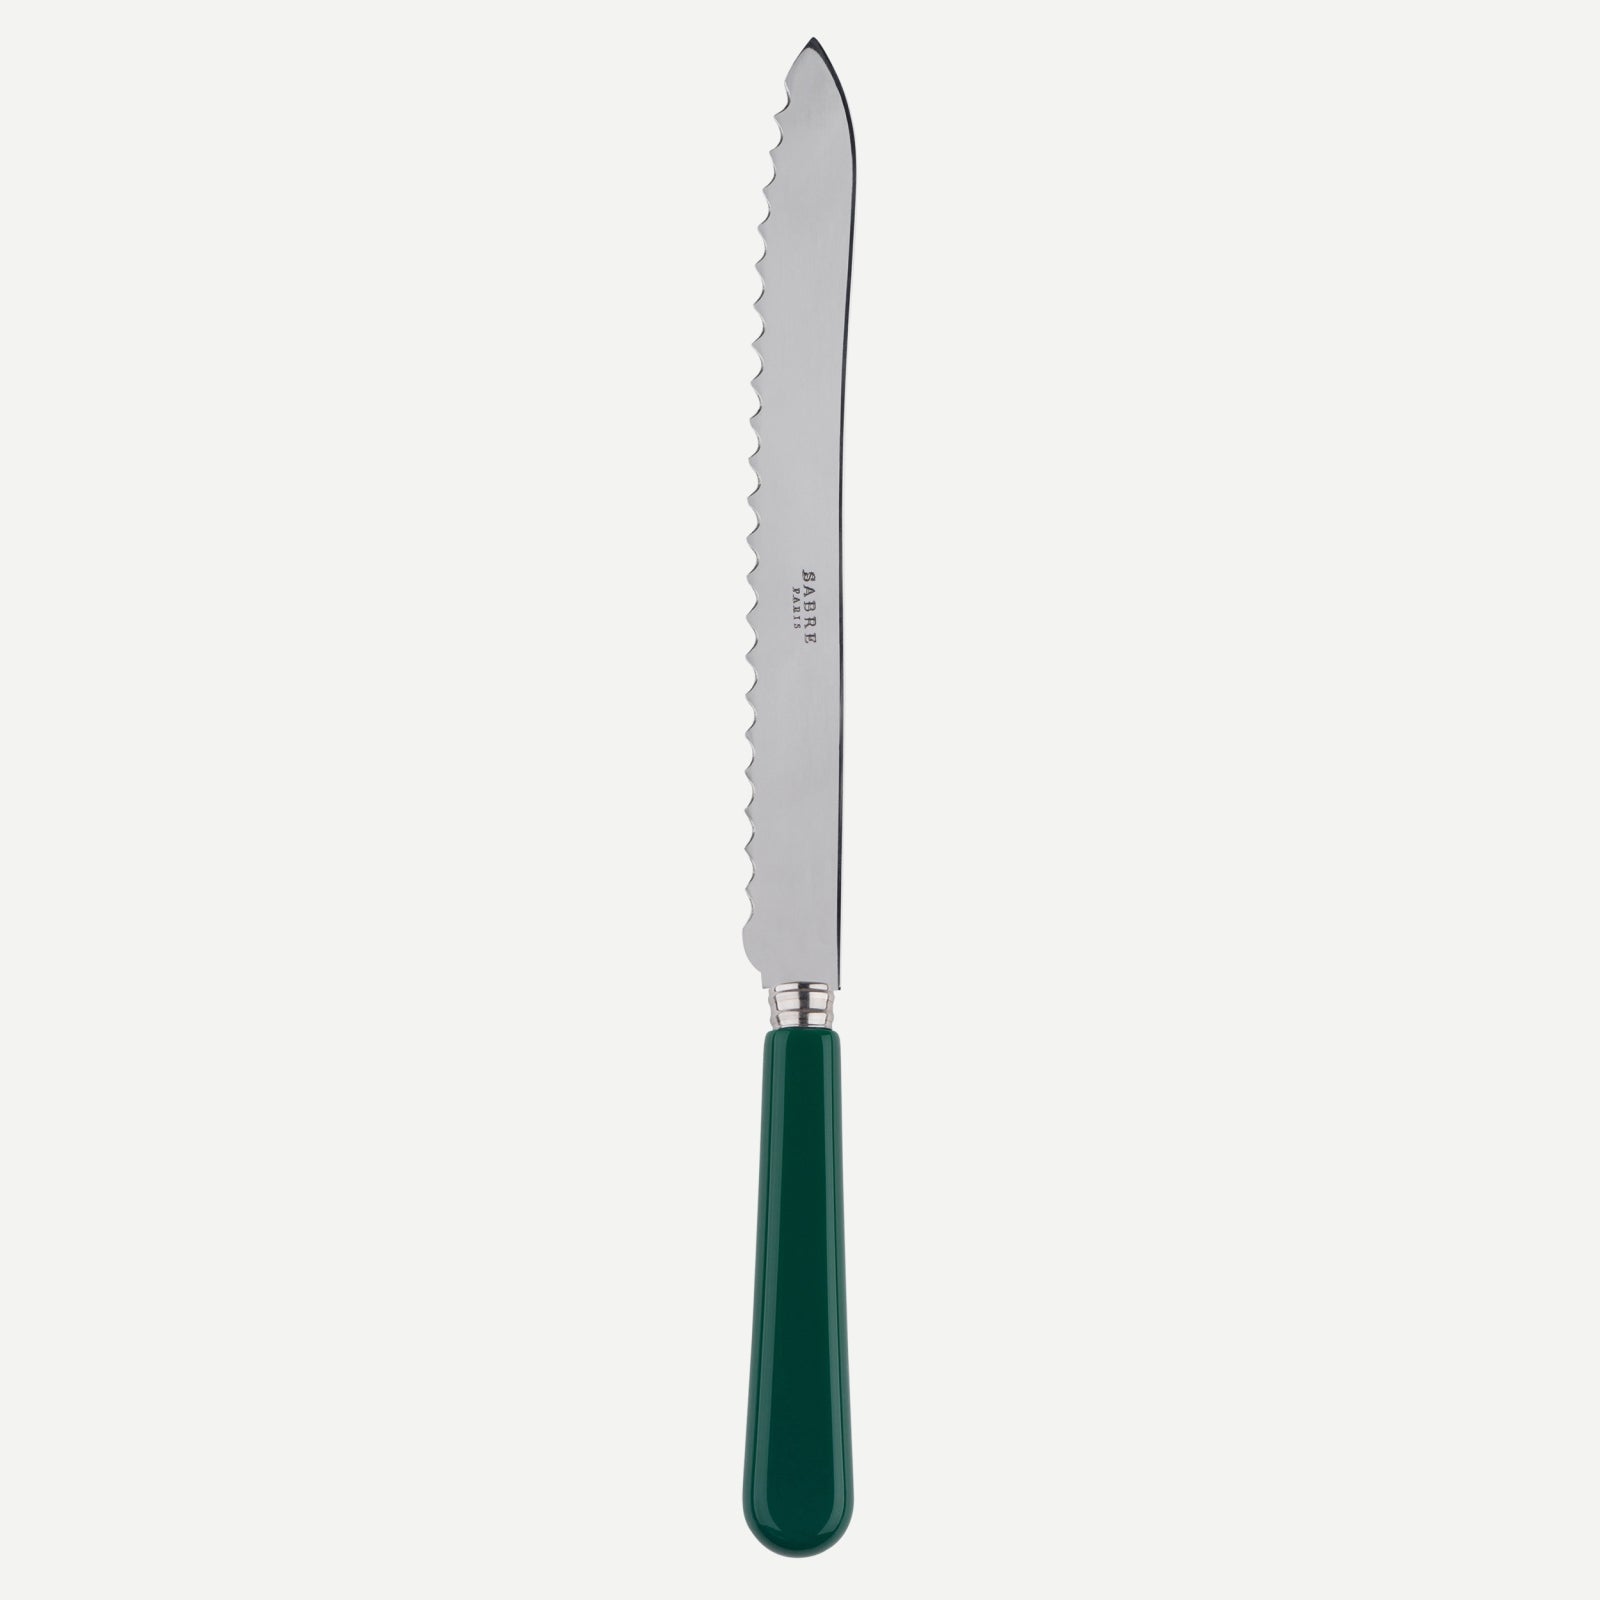 Bread knife - Pop unis - Green